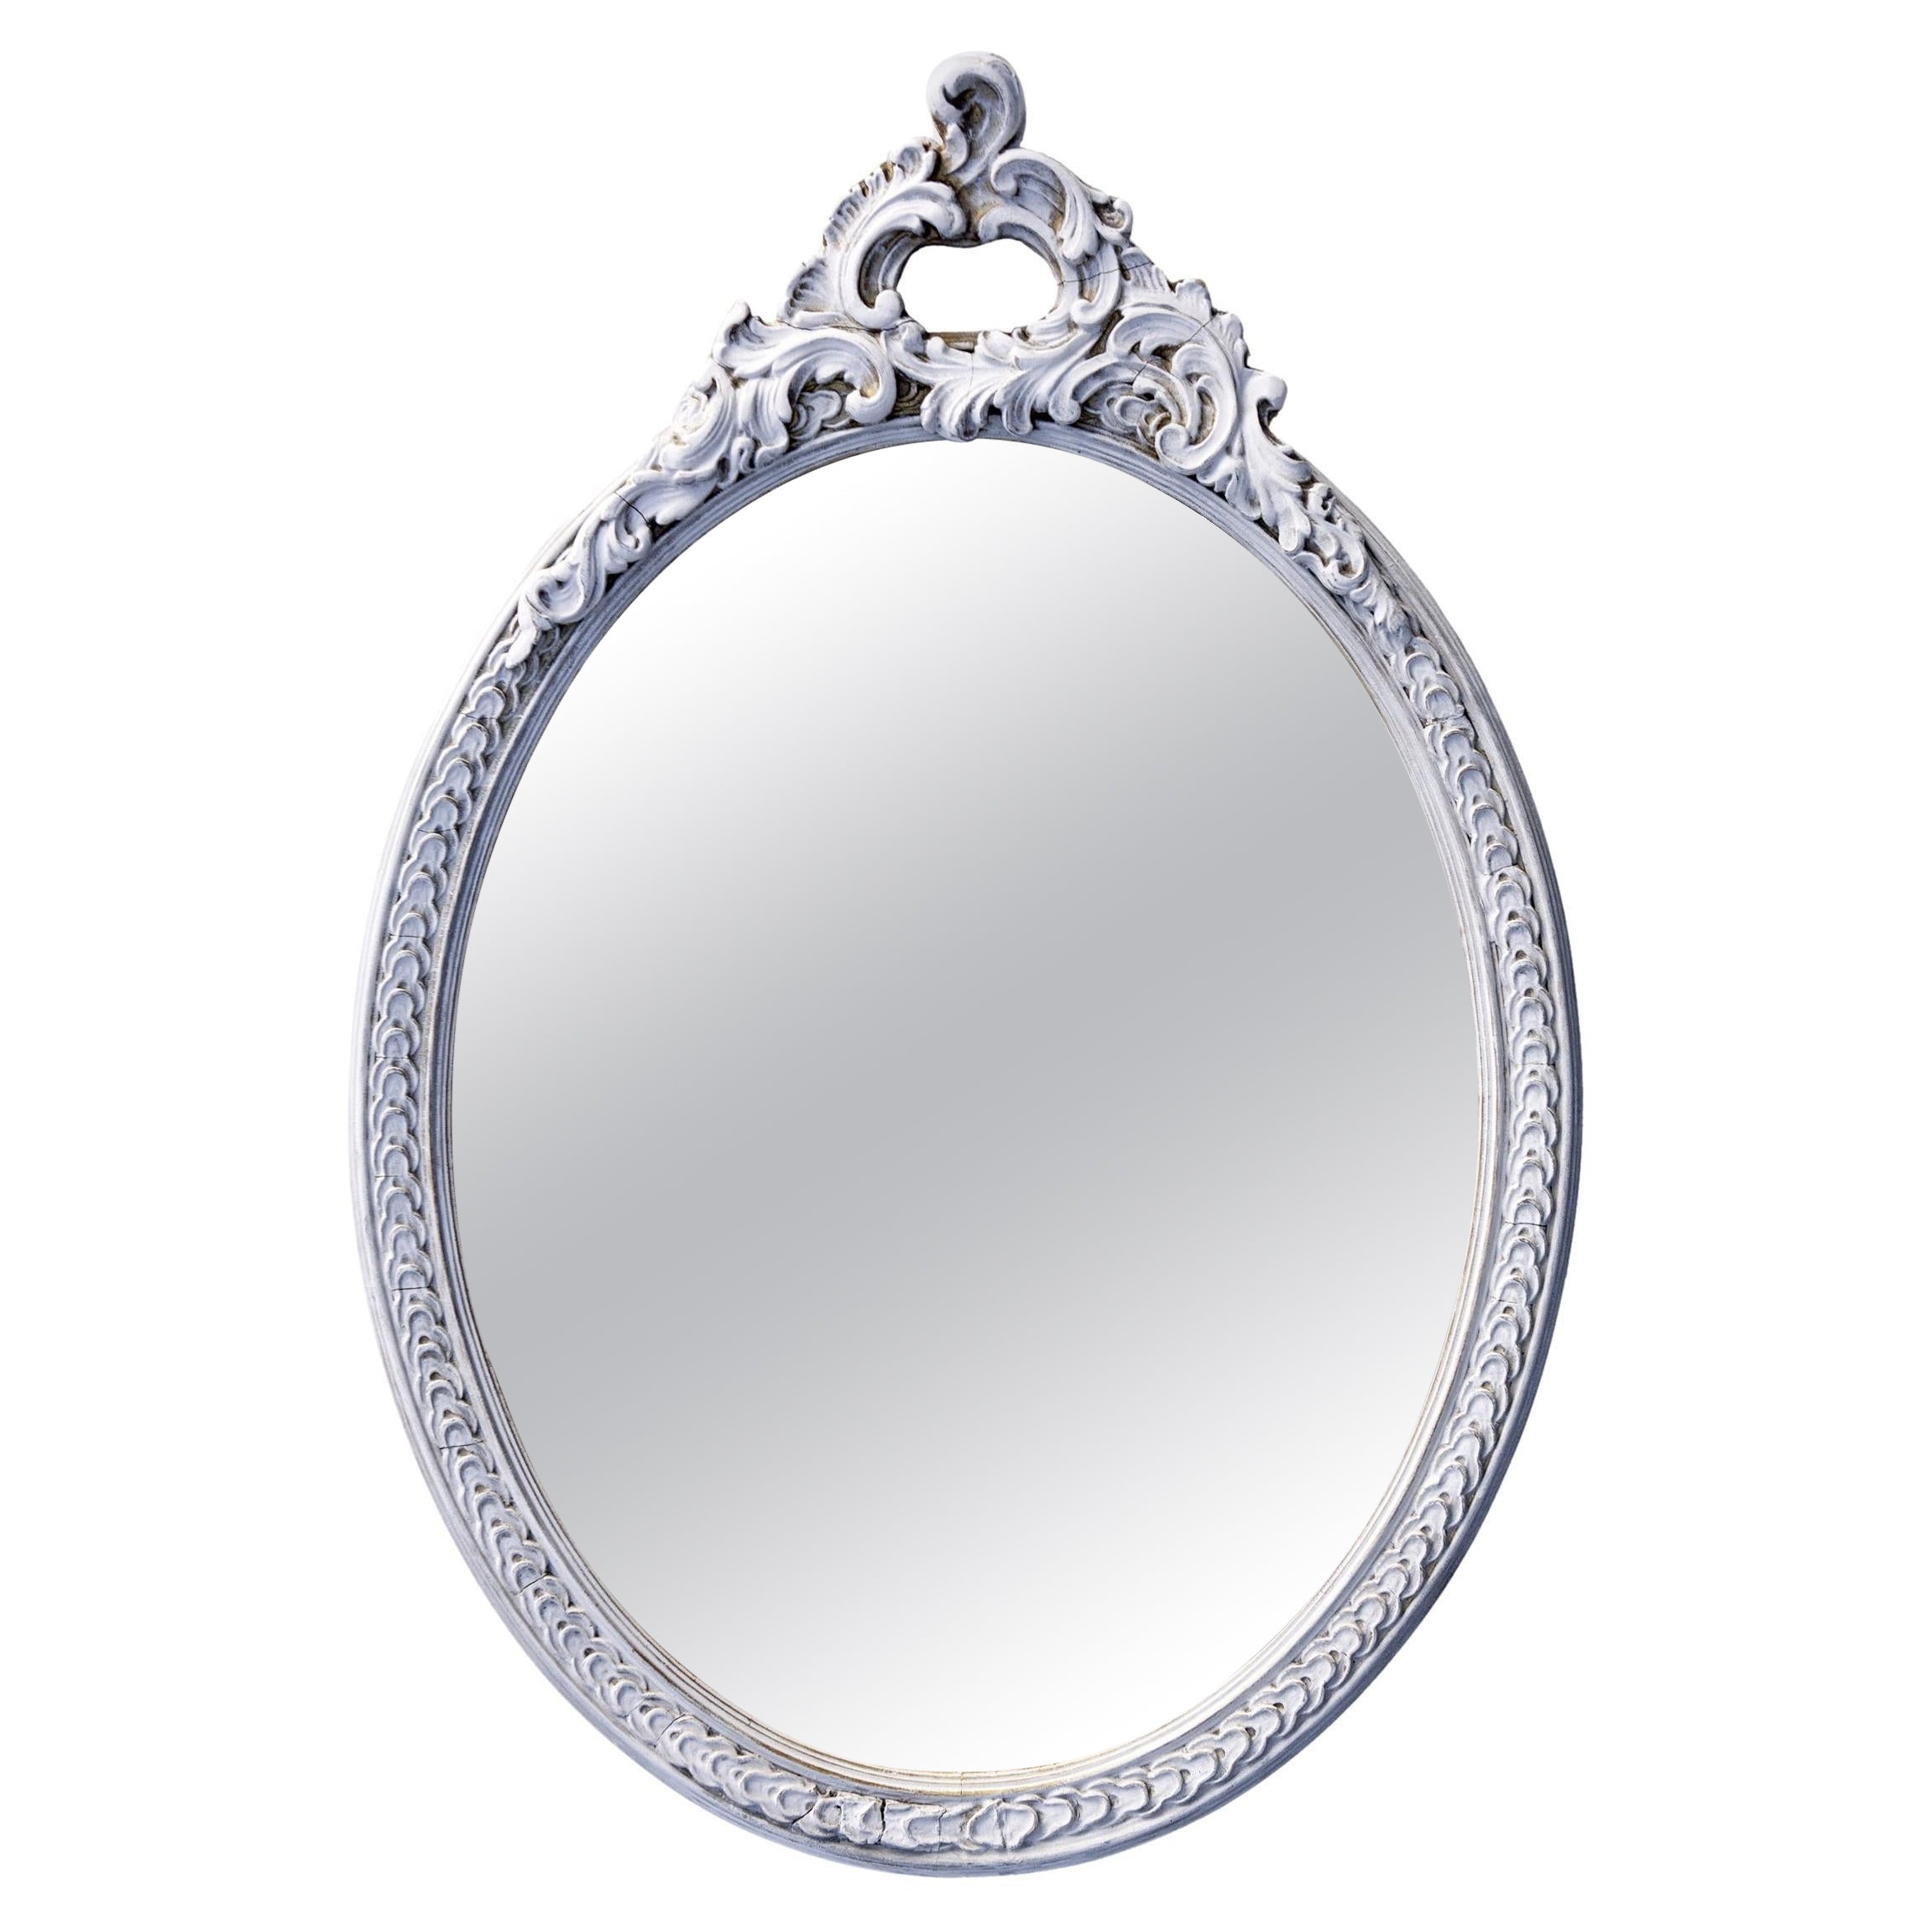 Handbemalter Mauvy Pink Oval gerahmter Spiegel/ Dekorative Krone 